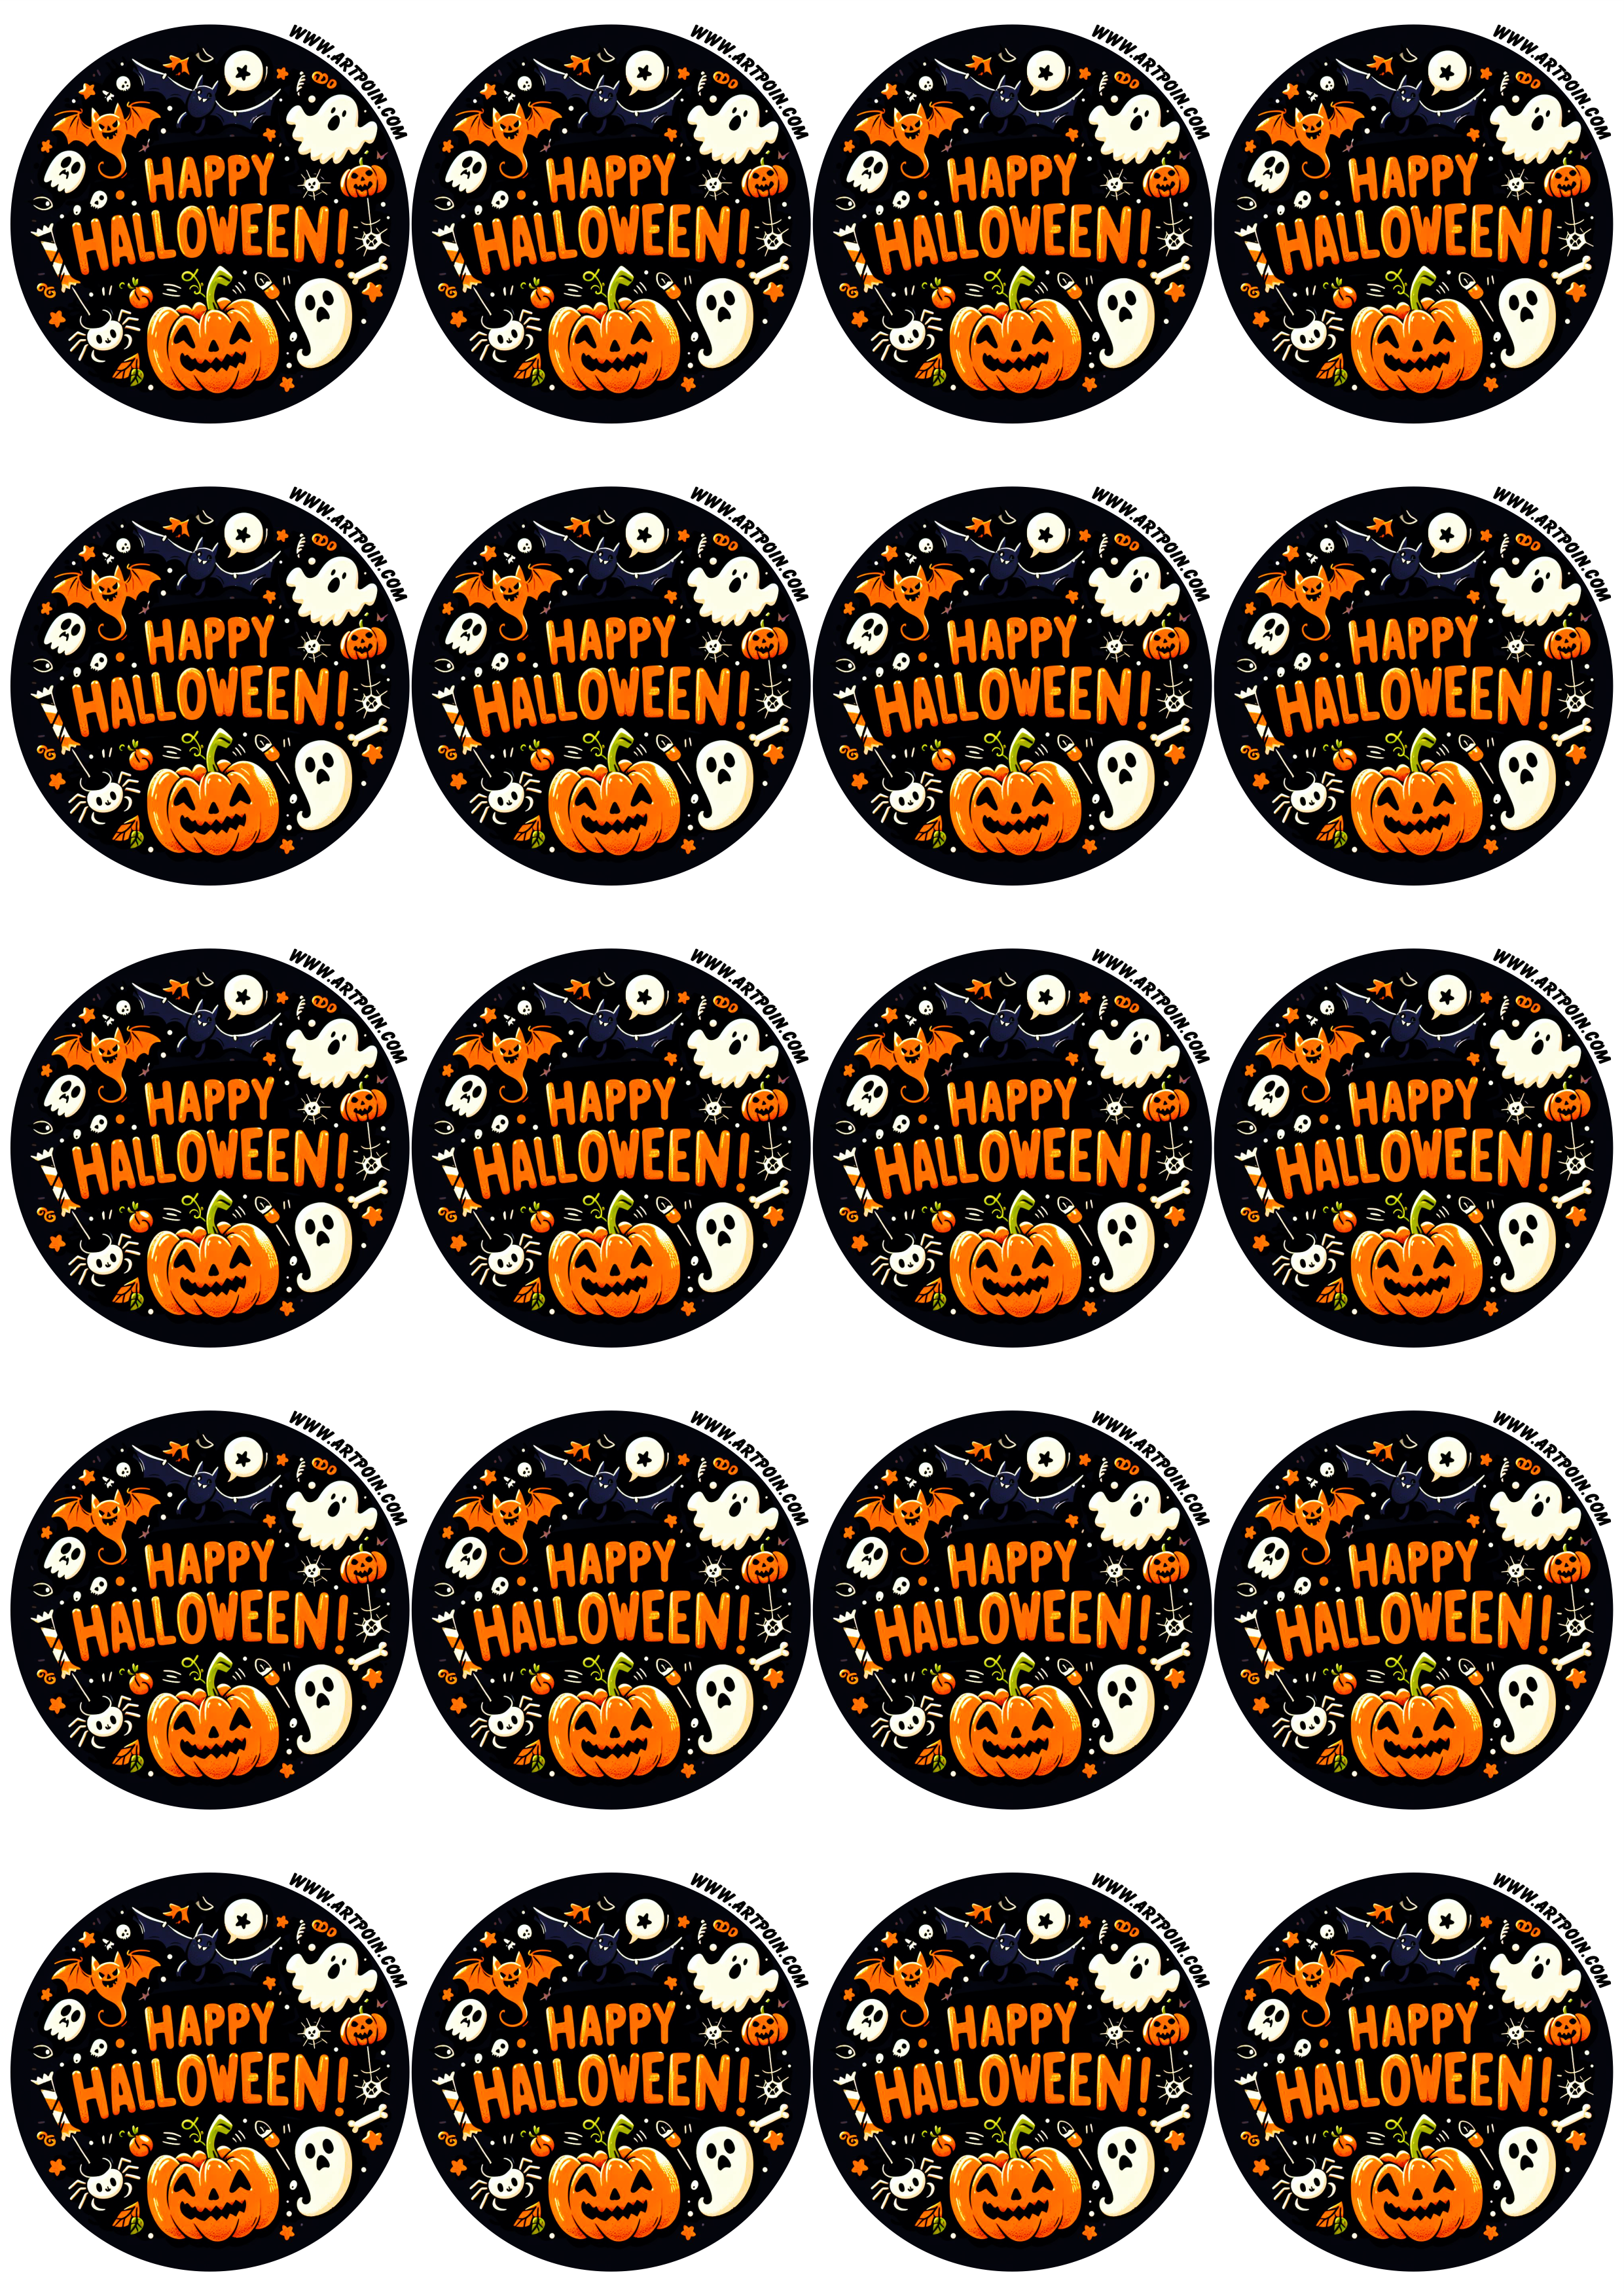 Happy Halloween adesivo redondo tag sticker assustador fantasma abóbora aranha gostosuras ou travessuras 20 imagens png